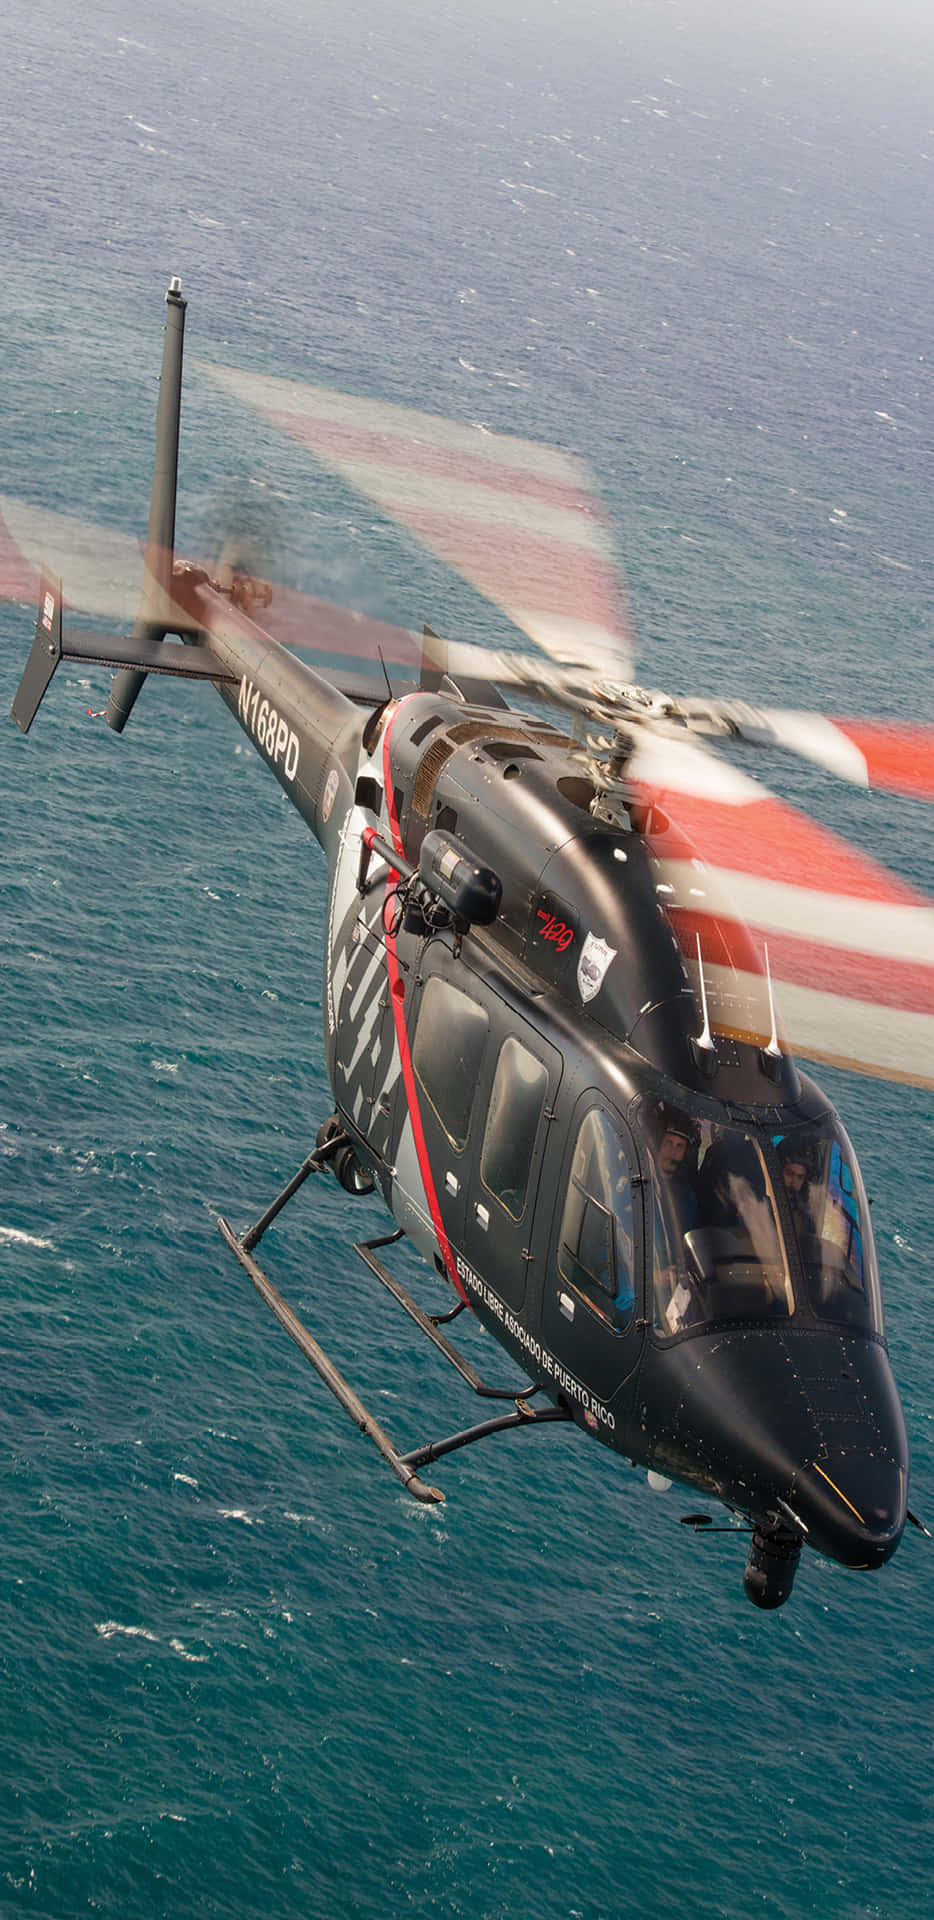 Pixel 3xl Helicopterer Baggrund Flyvende Bell 429 GlobalRanger.